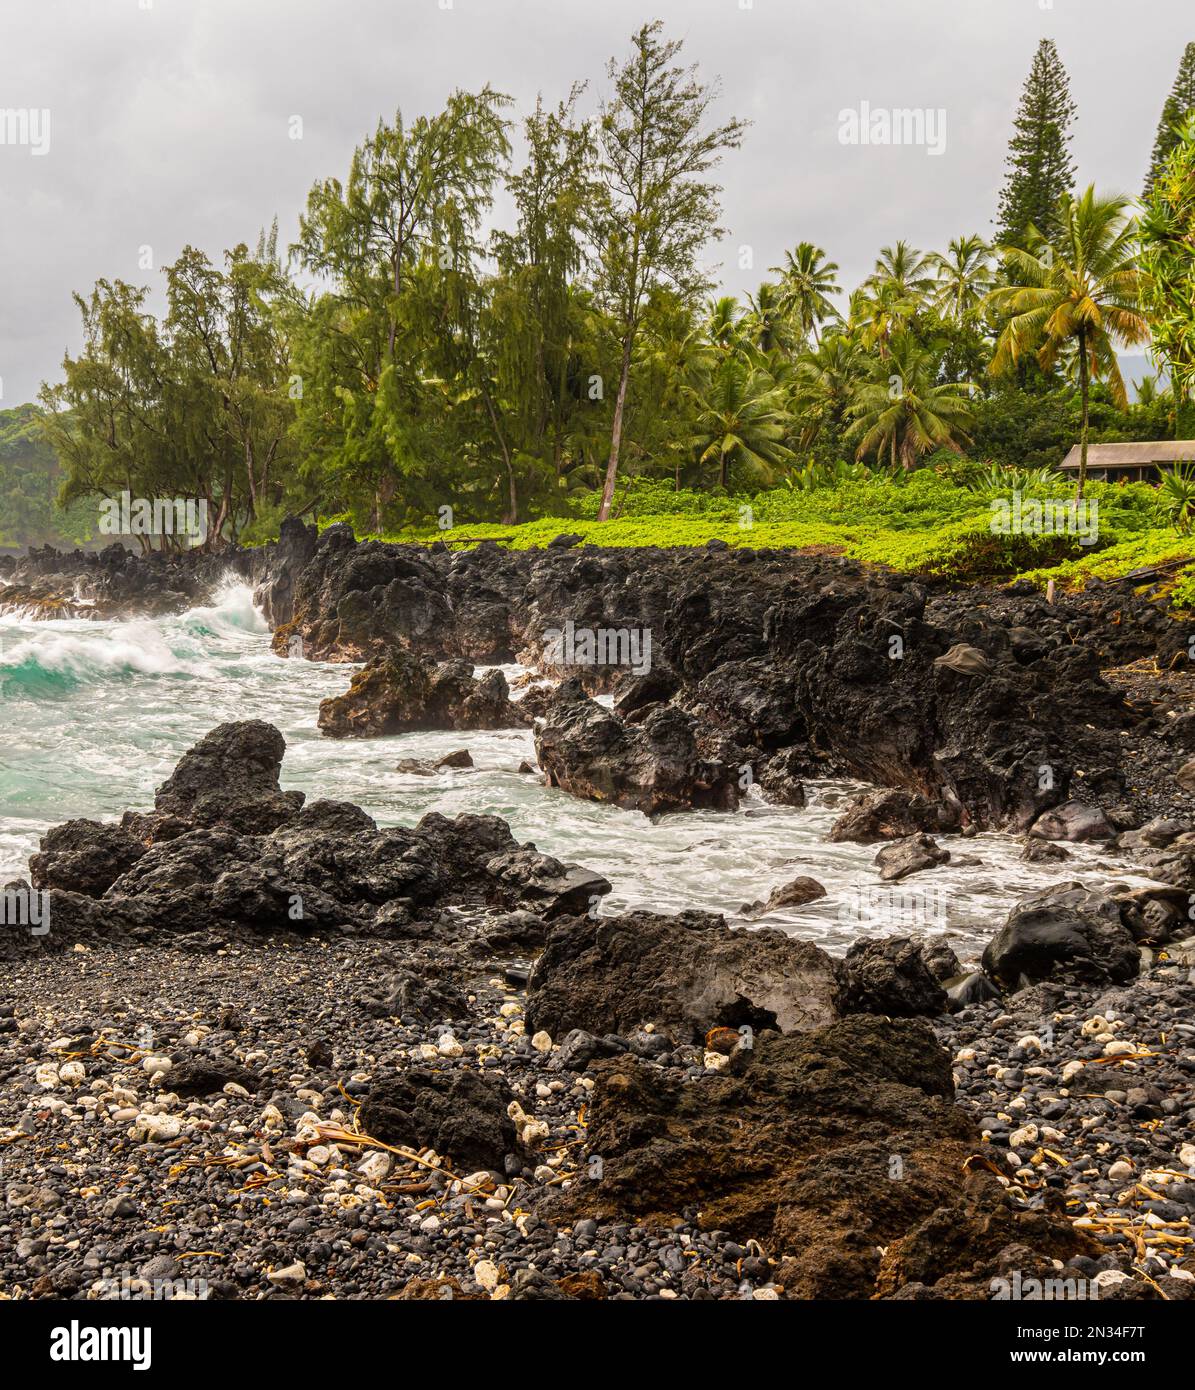 Vagues s'écrasant contre la côte sauvage de Keanae point, Keanae, Maui, Hawaii, États-Unis Banque D'Images